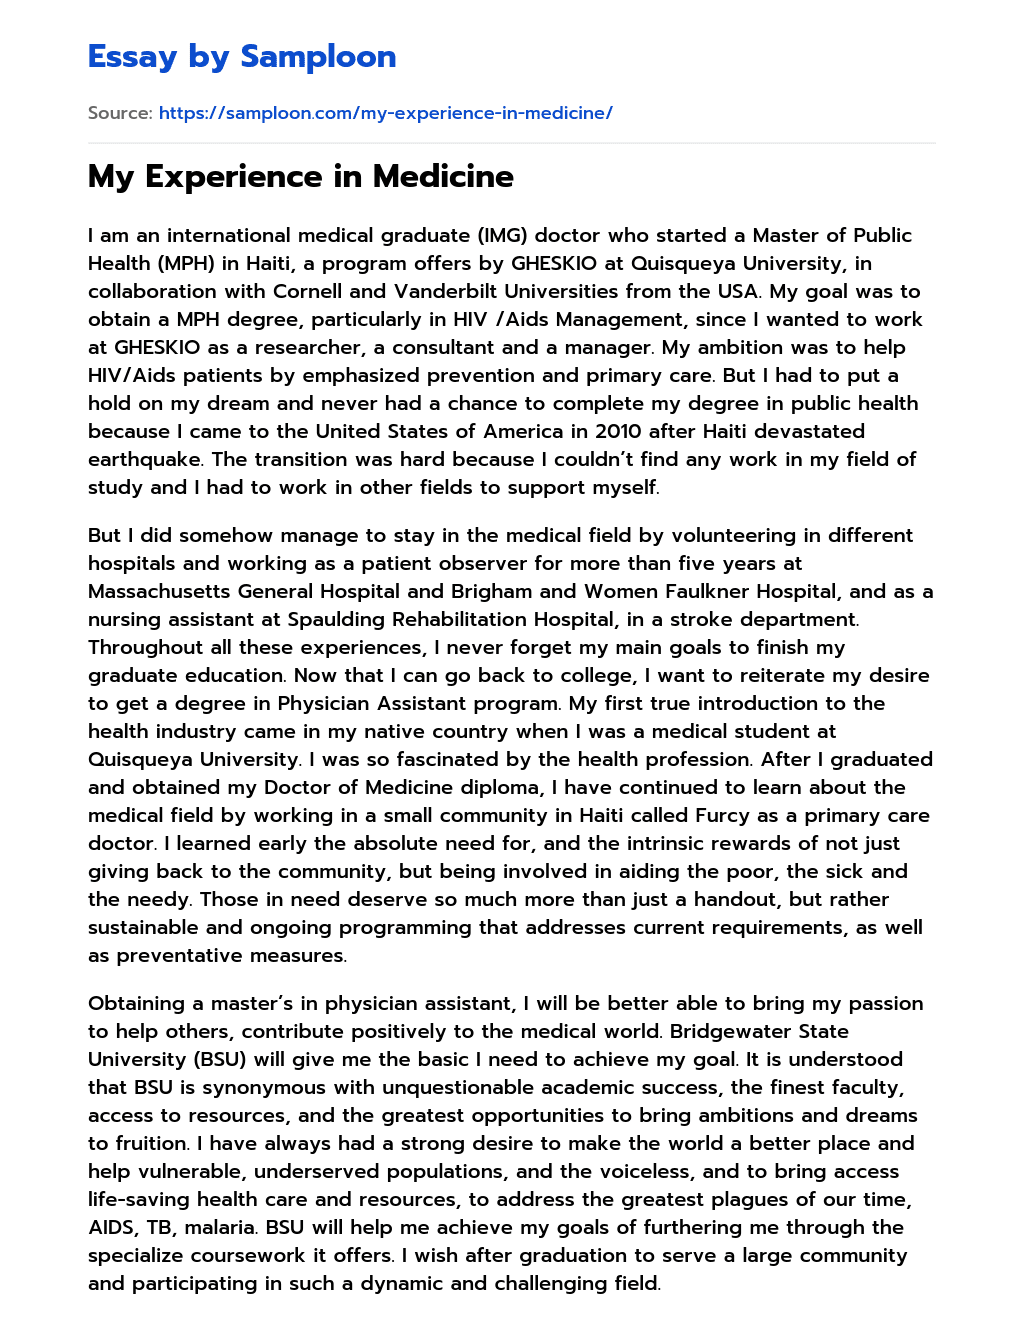 My Experience in Medicine essay